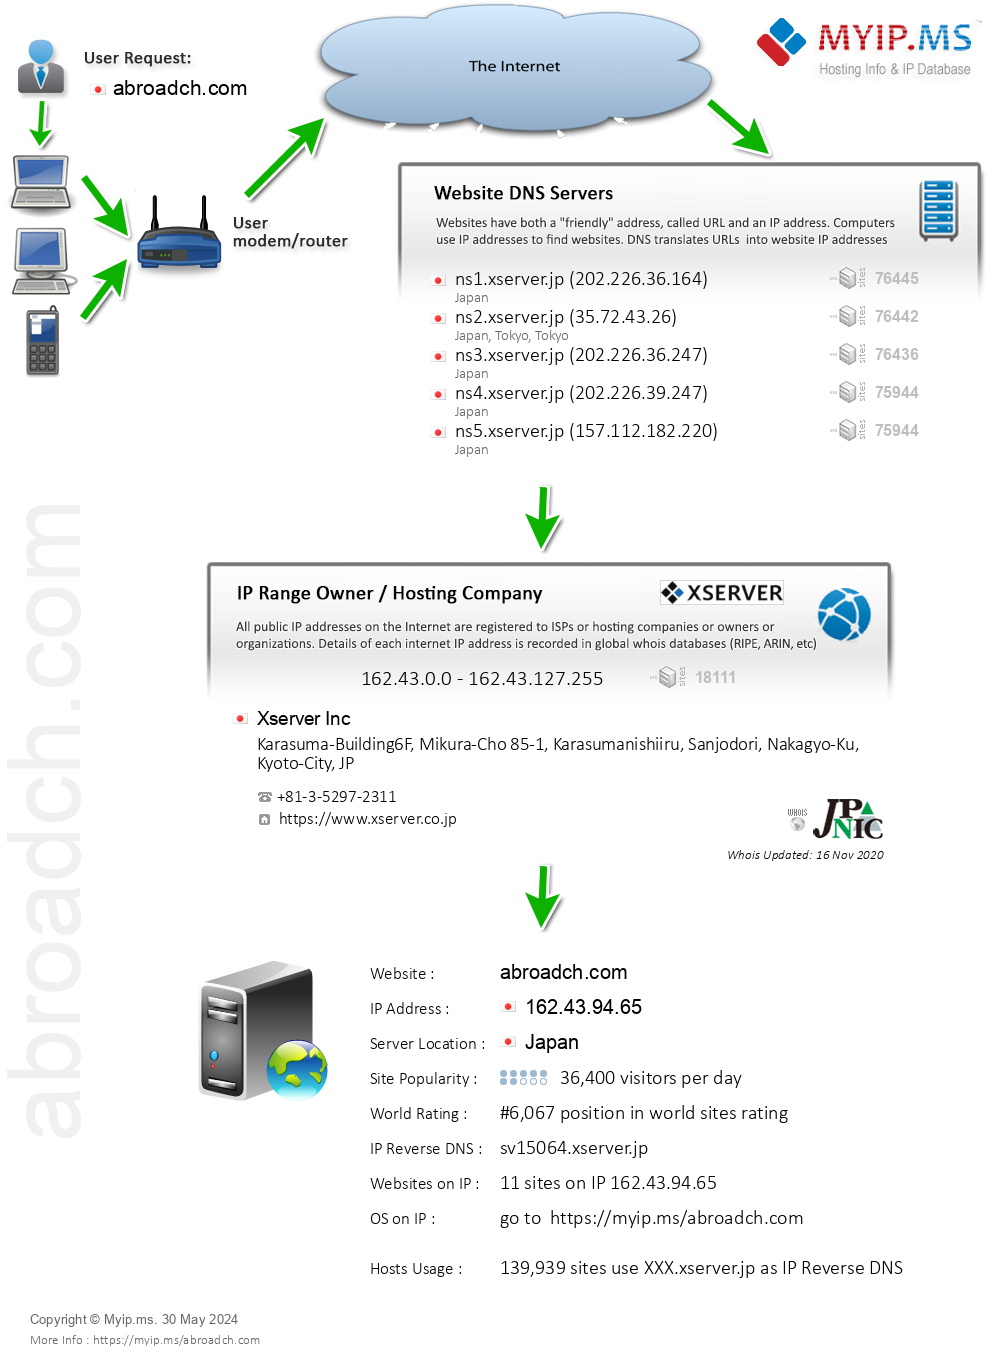 Abroadch.com - Website Hosting Visual IP Diagram